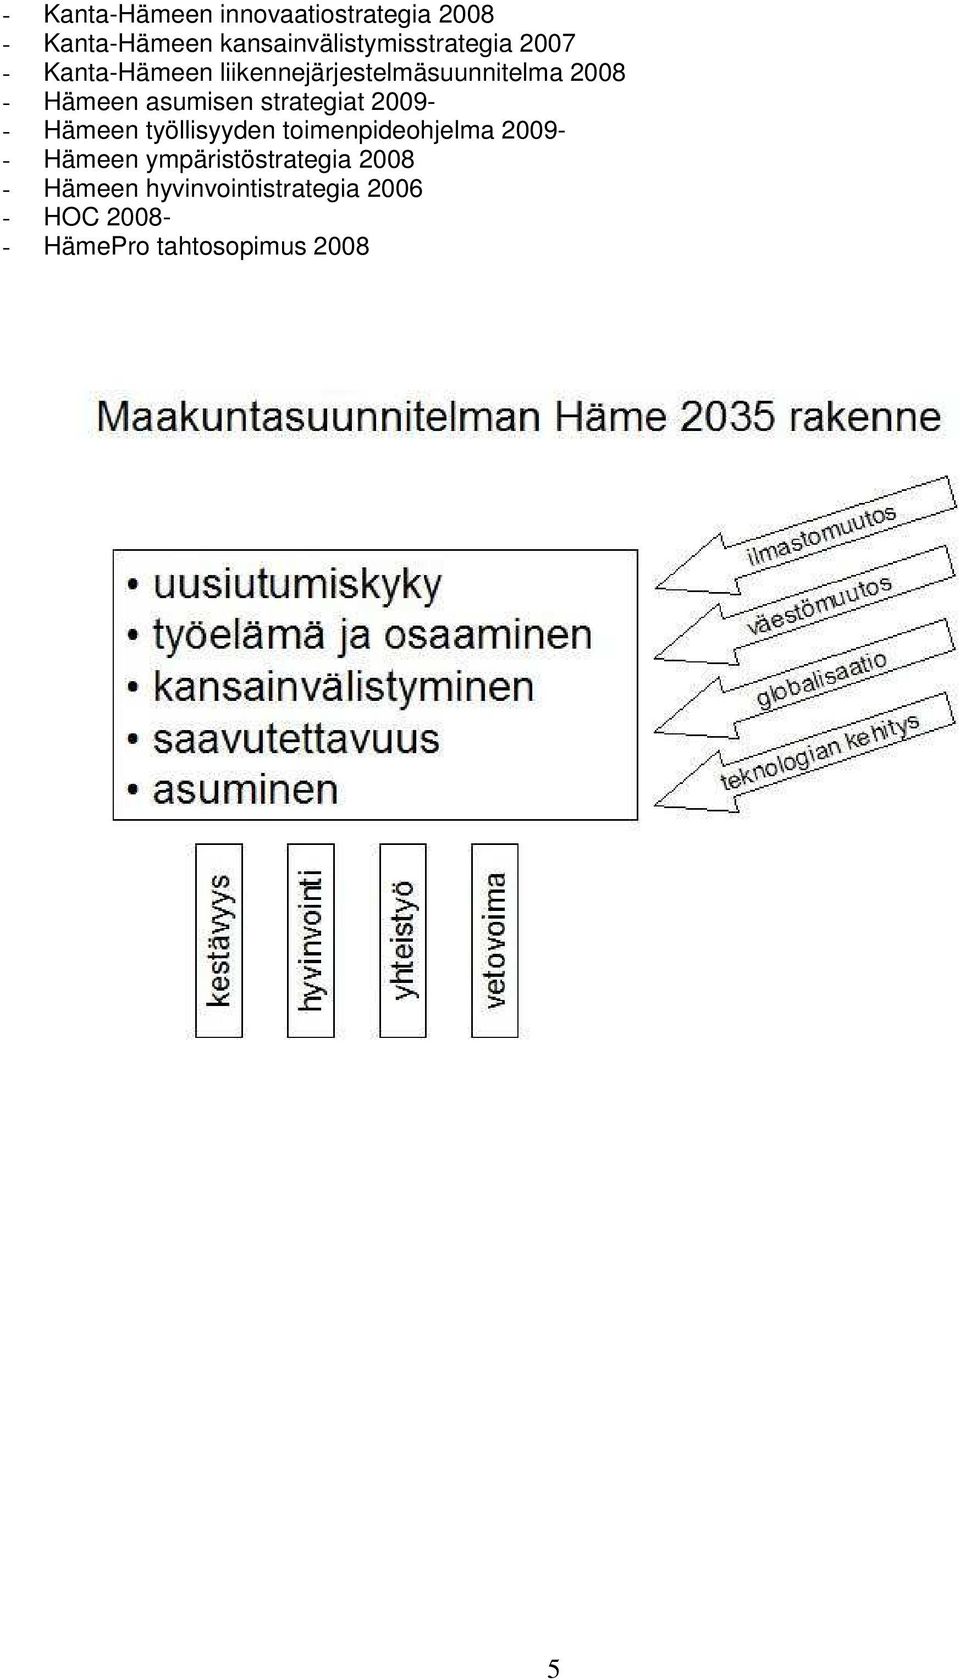 strategiat 2009- - Hämeen työllisyyden toimenpideohjelma 2009- - Hämeen